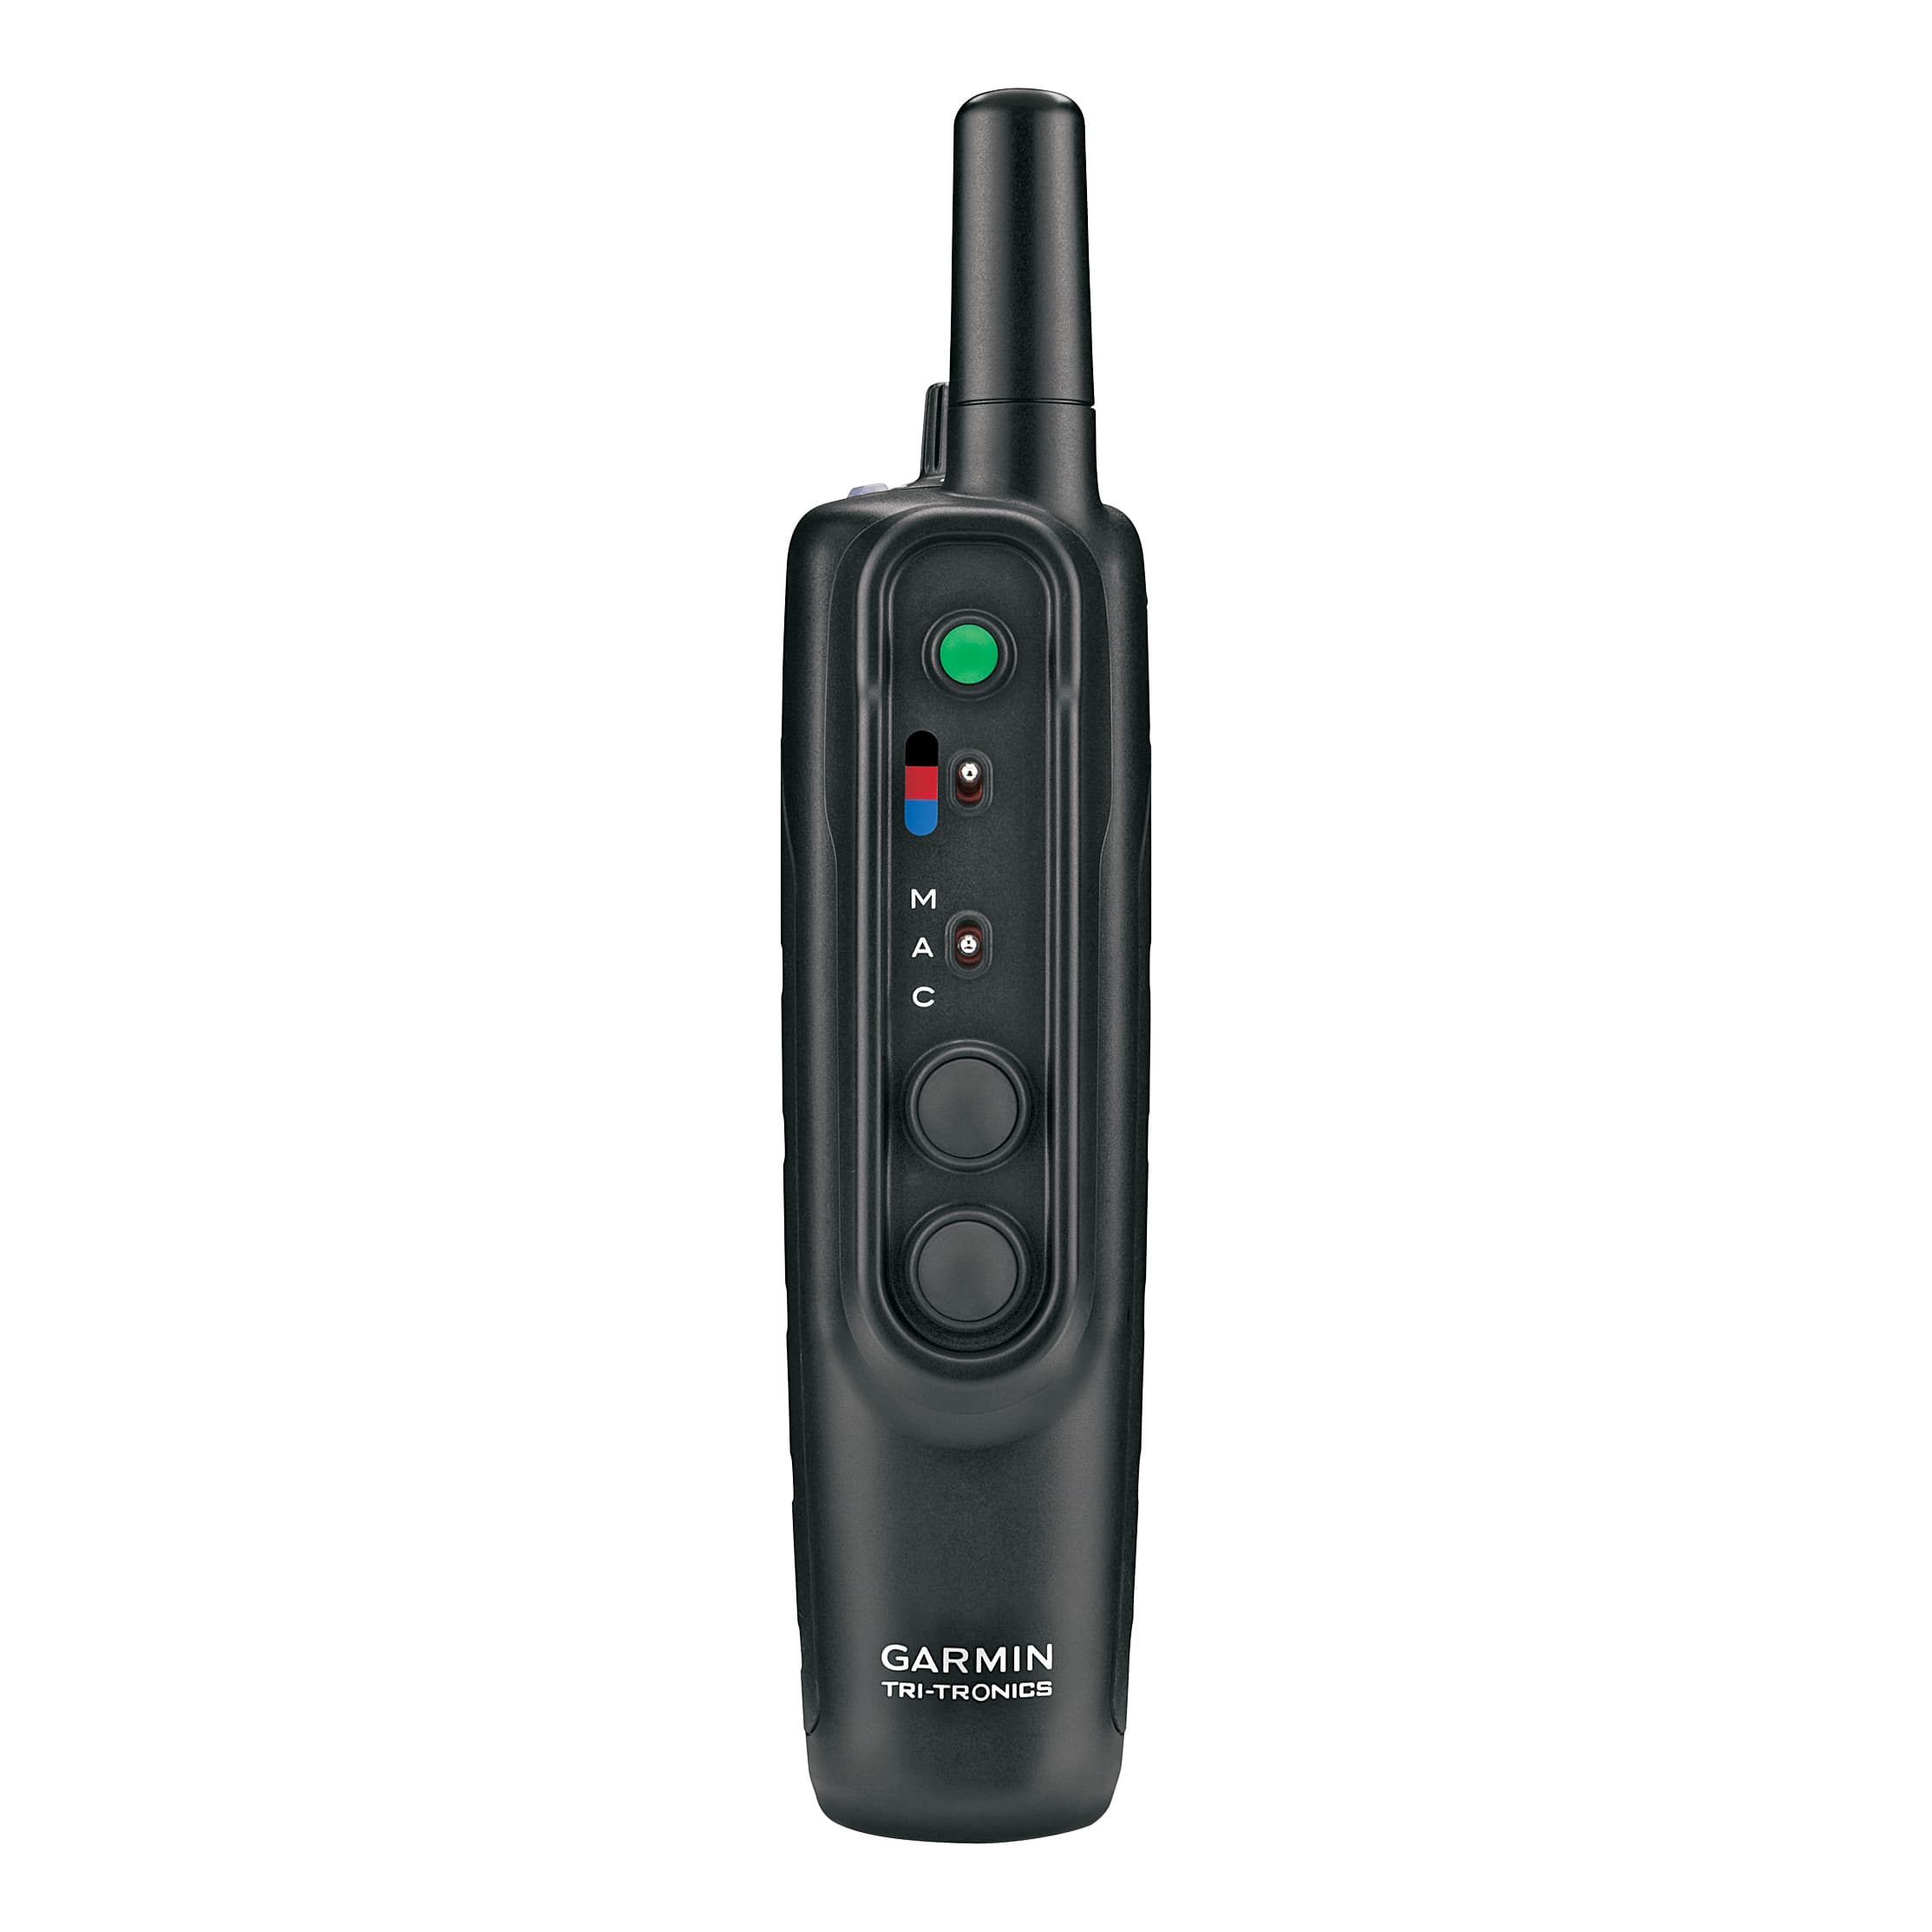 Garmin®/Tri-Tronics® Pro 550 Bundle - Remote